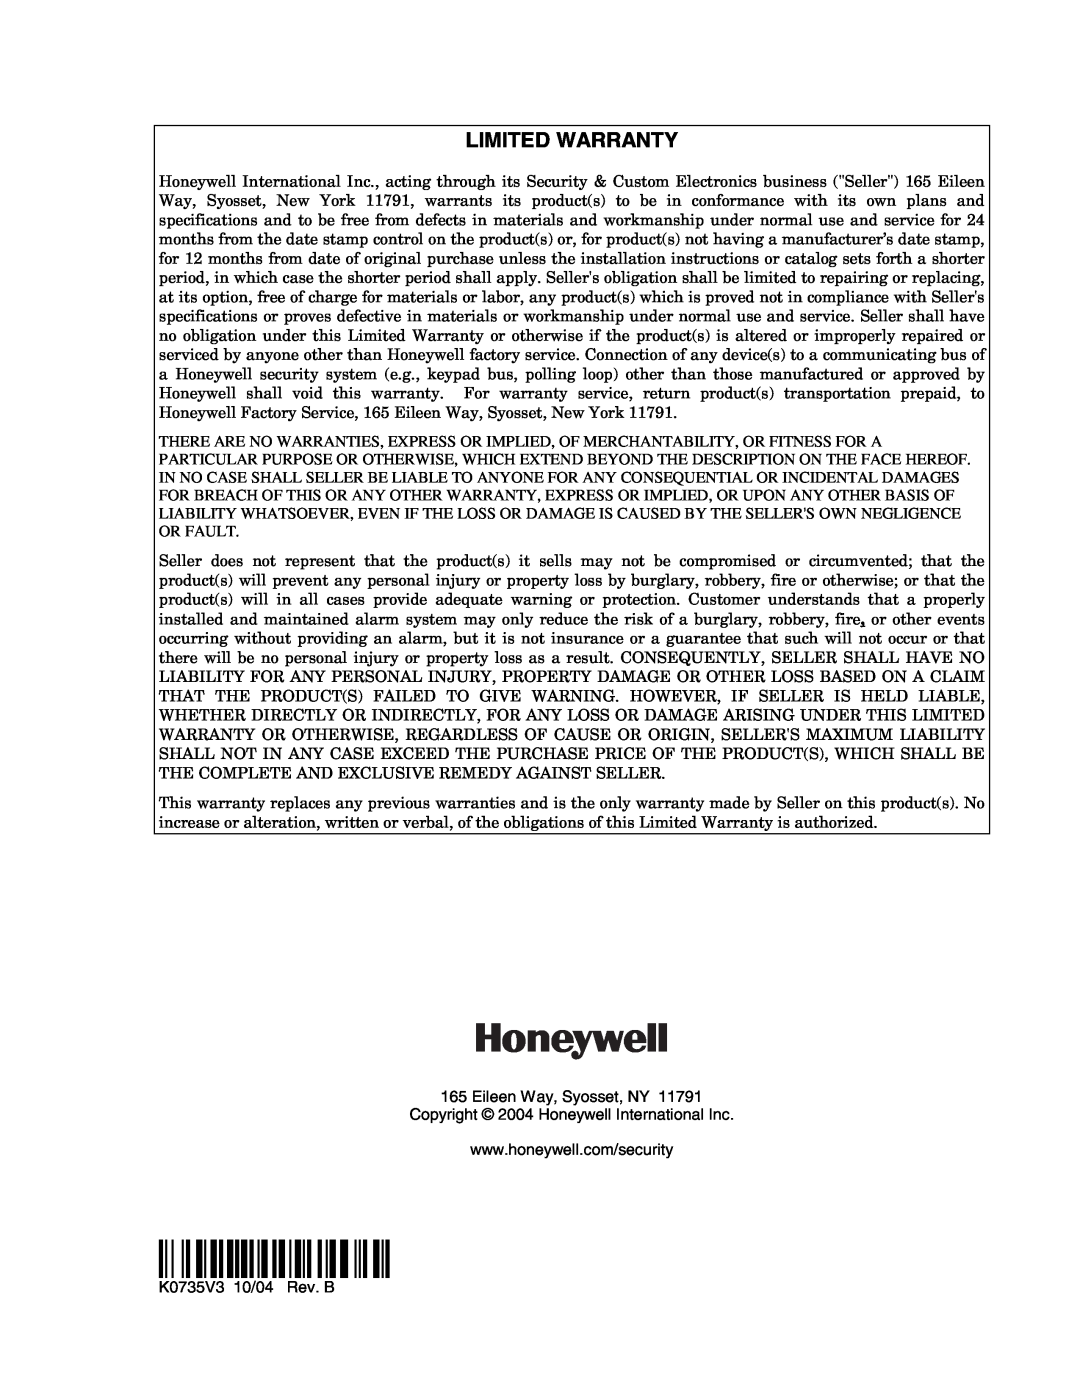 Honeywell VISTA-10PSIA, Ademco Security Systems setup guide ÊK0735V3 Š, Limited Warranty 